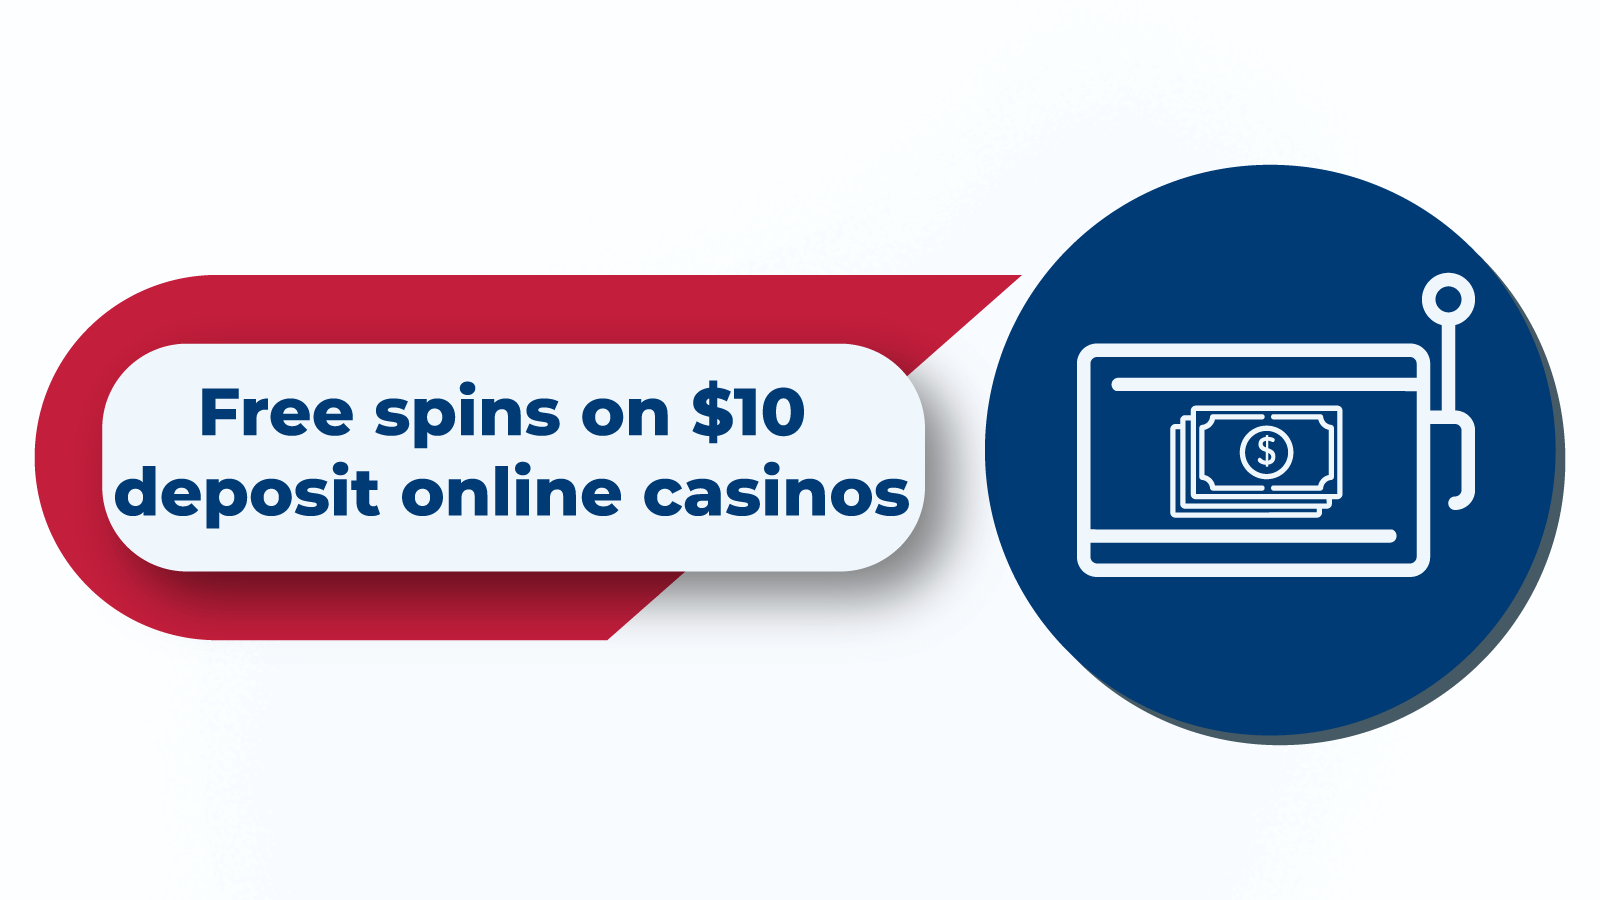 Free spins on ¥10 deposit online casinos